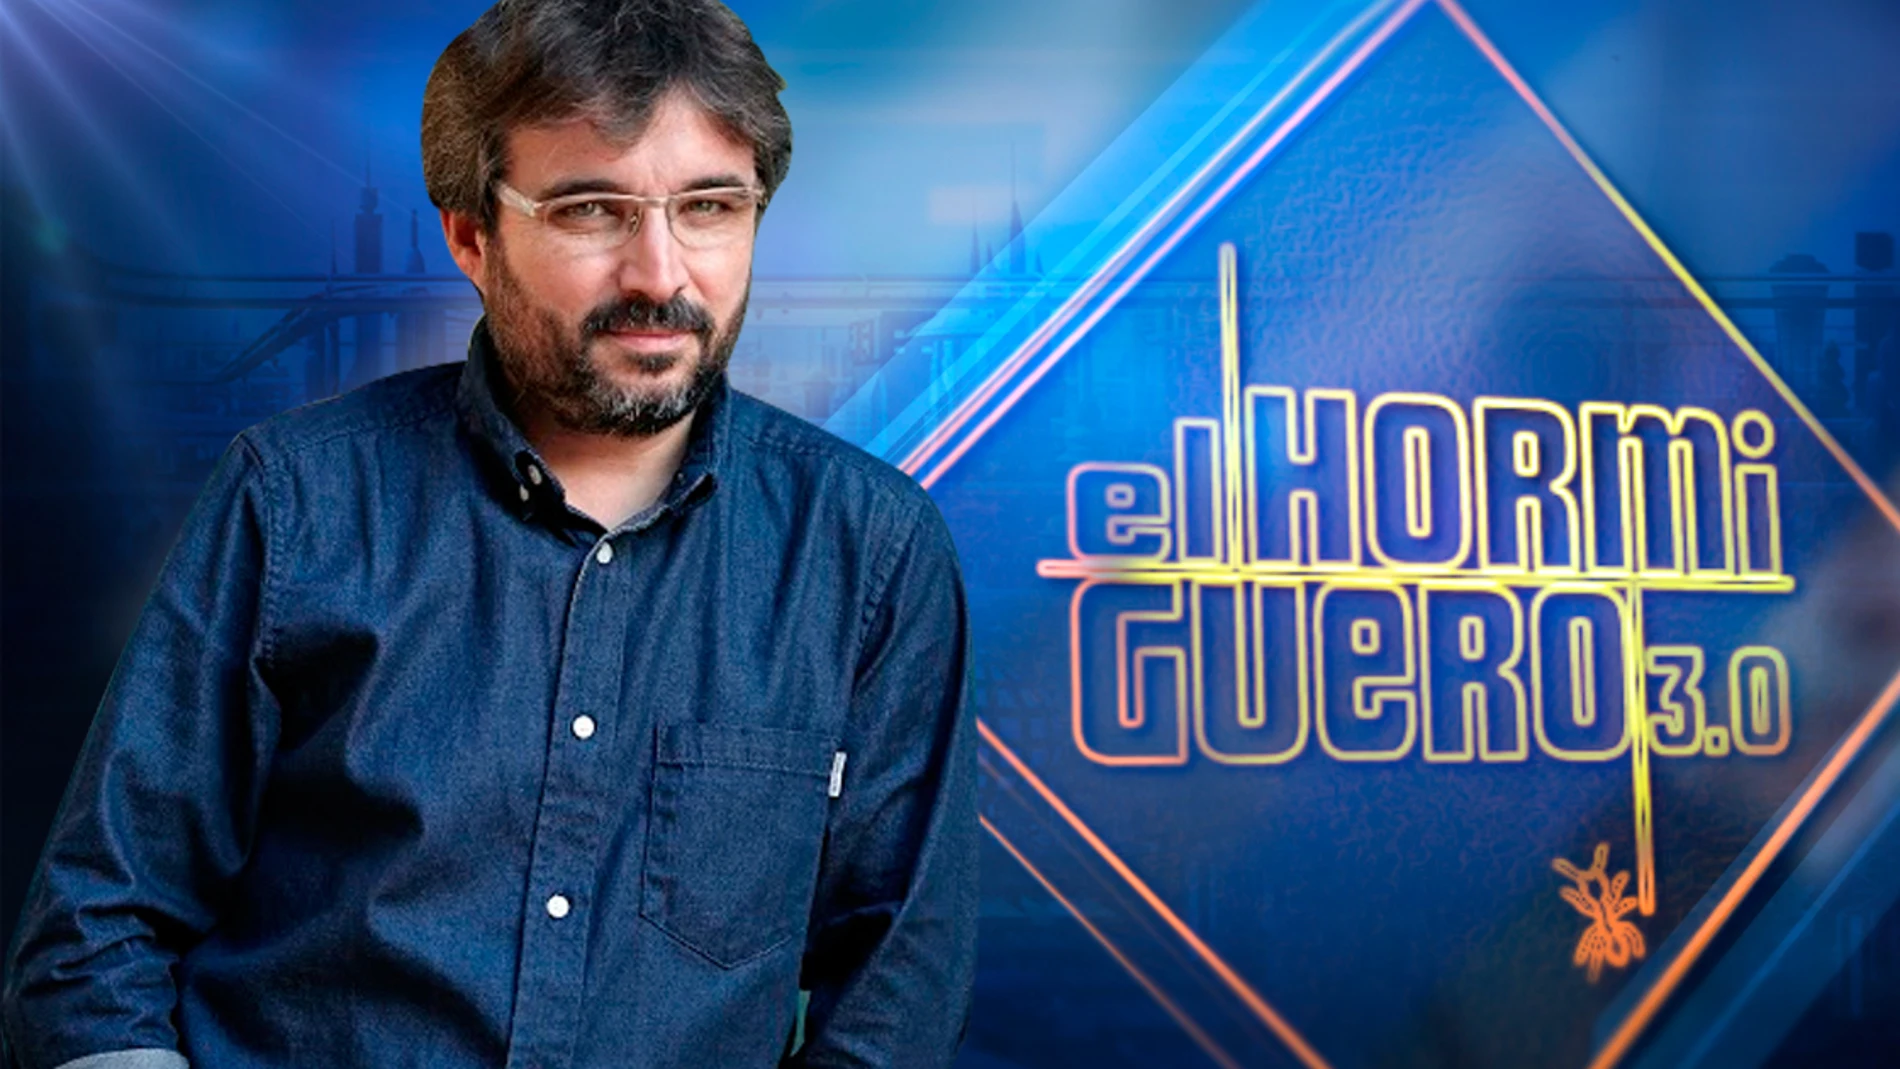 periodista Jordi presenta la nueva temporada 'Salvados' en 'El Hormiguero 3.0'